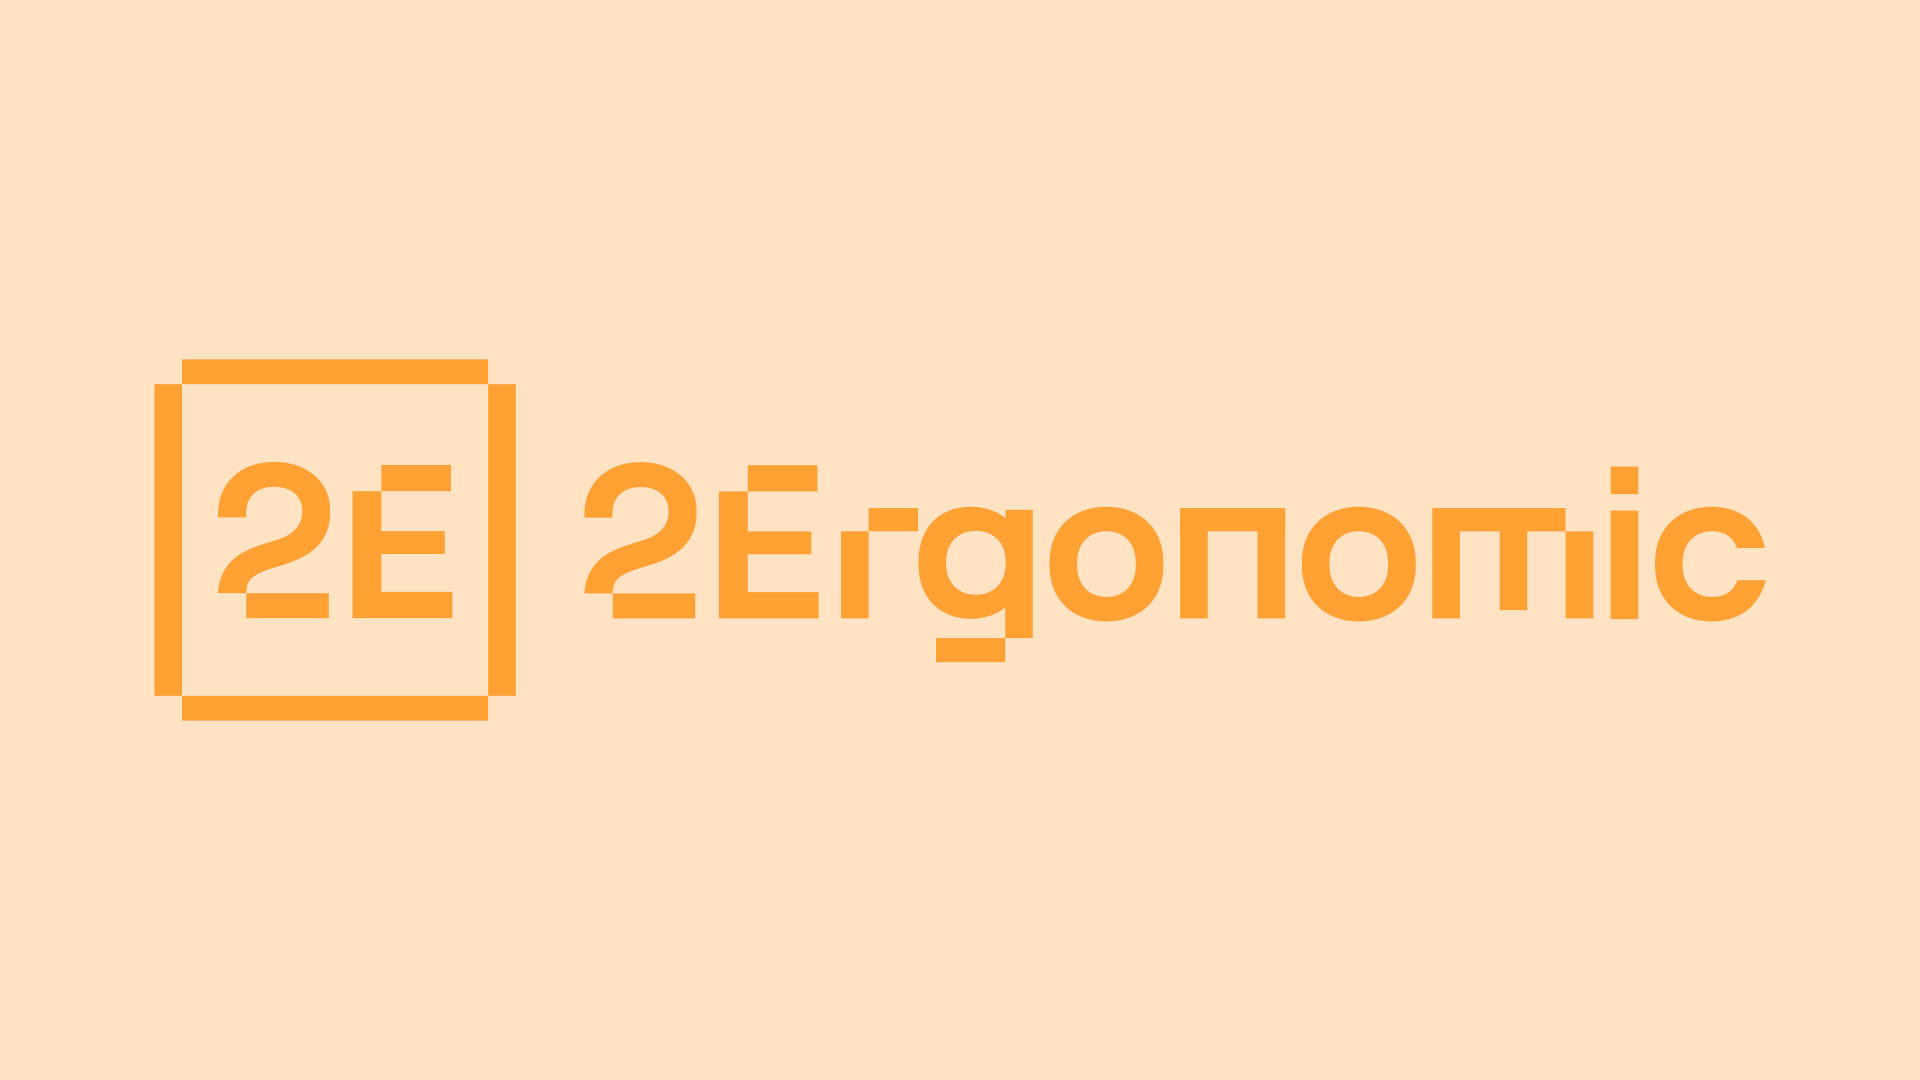 2Ergo logo design concept